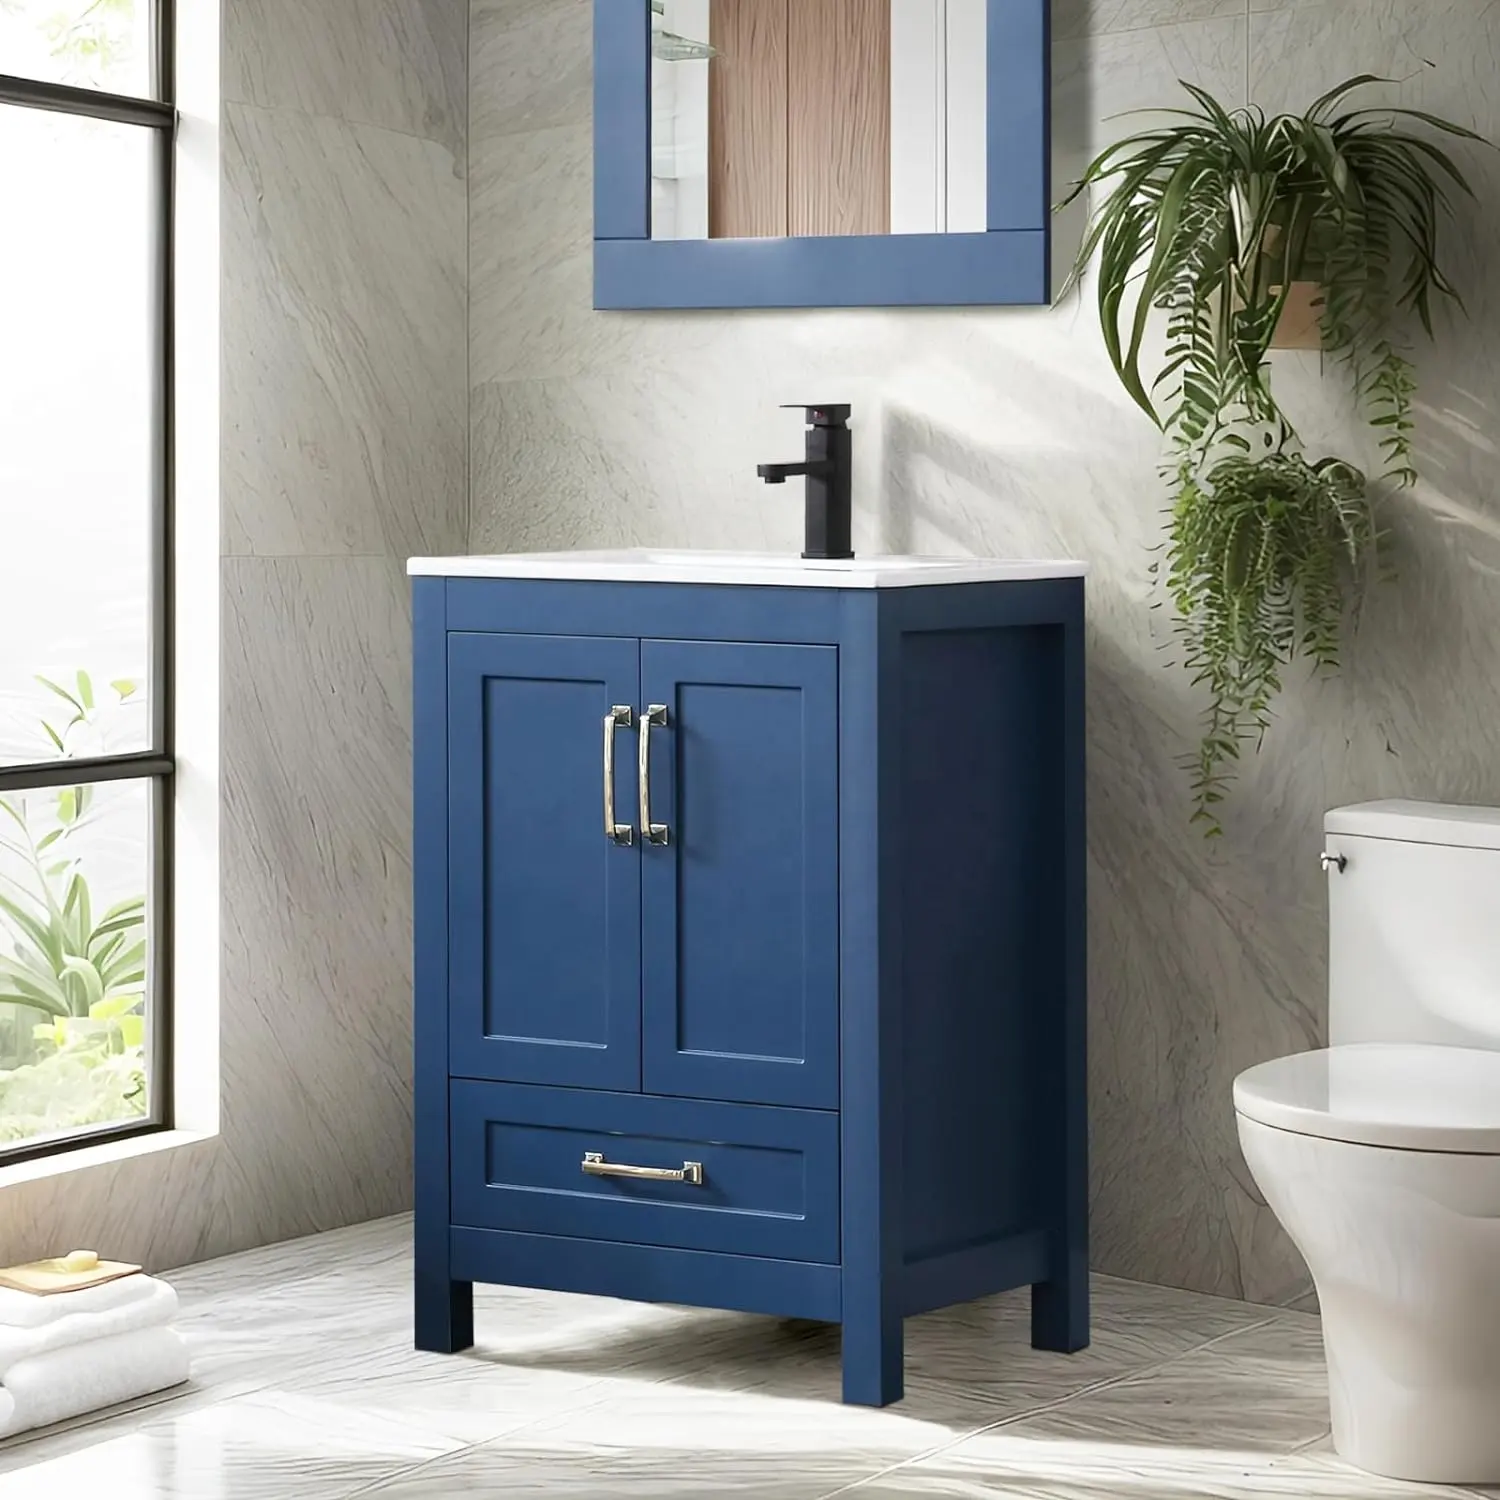 24 "नीला रंग मुक्त बाथरूम वैनिटी आधुनिक स्नान वैनिटी अलमारियाँ सिंक के साथ 24 इंच बाथरूम वैनिटी